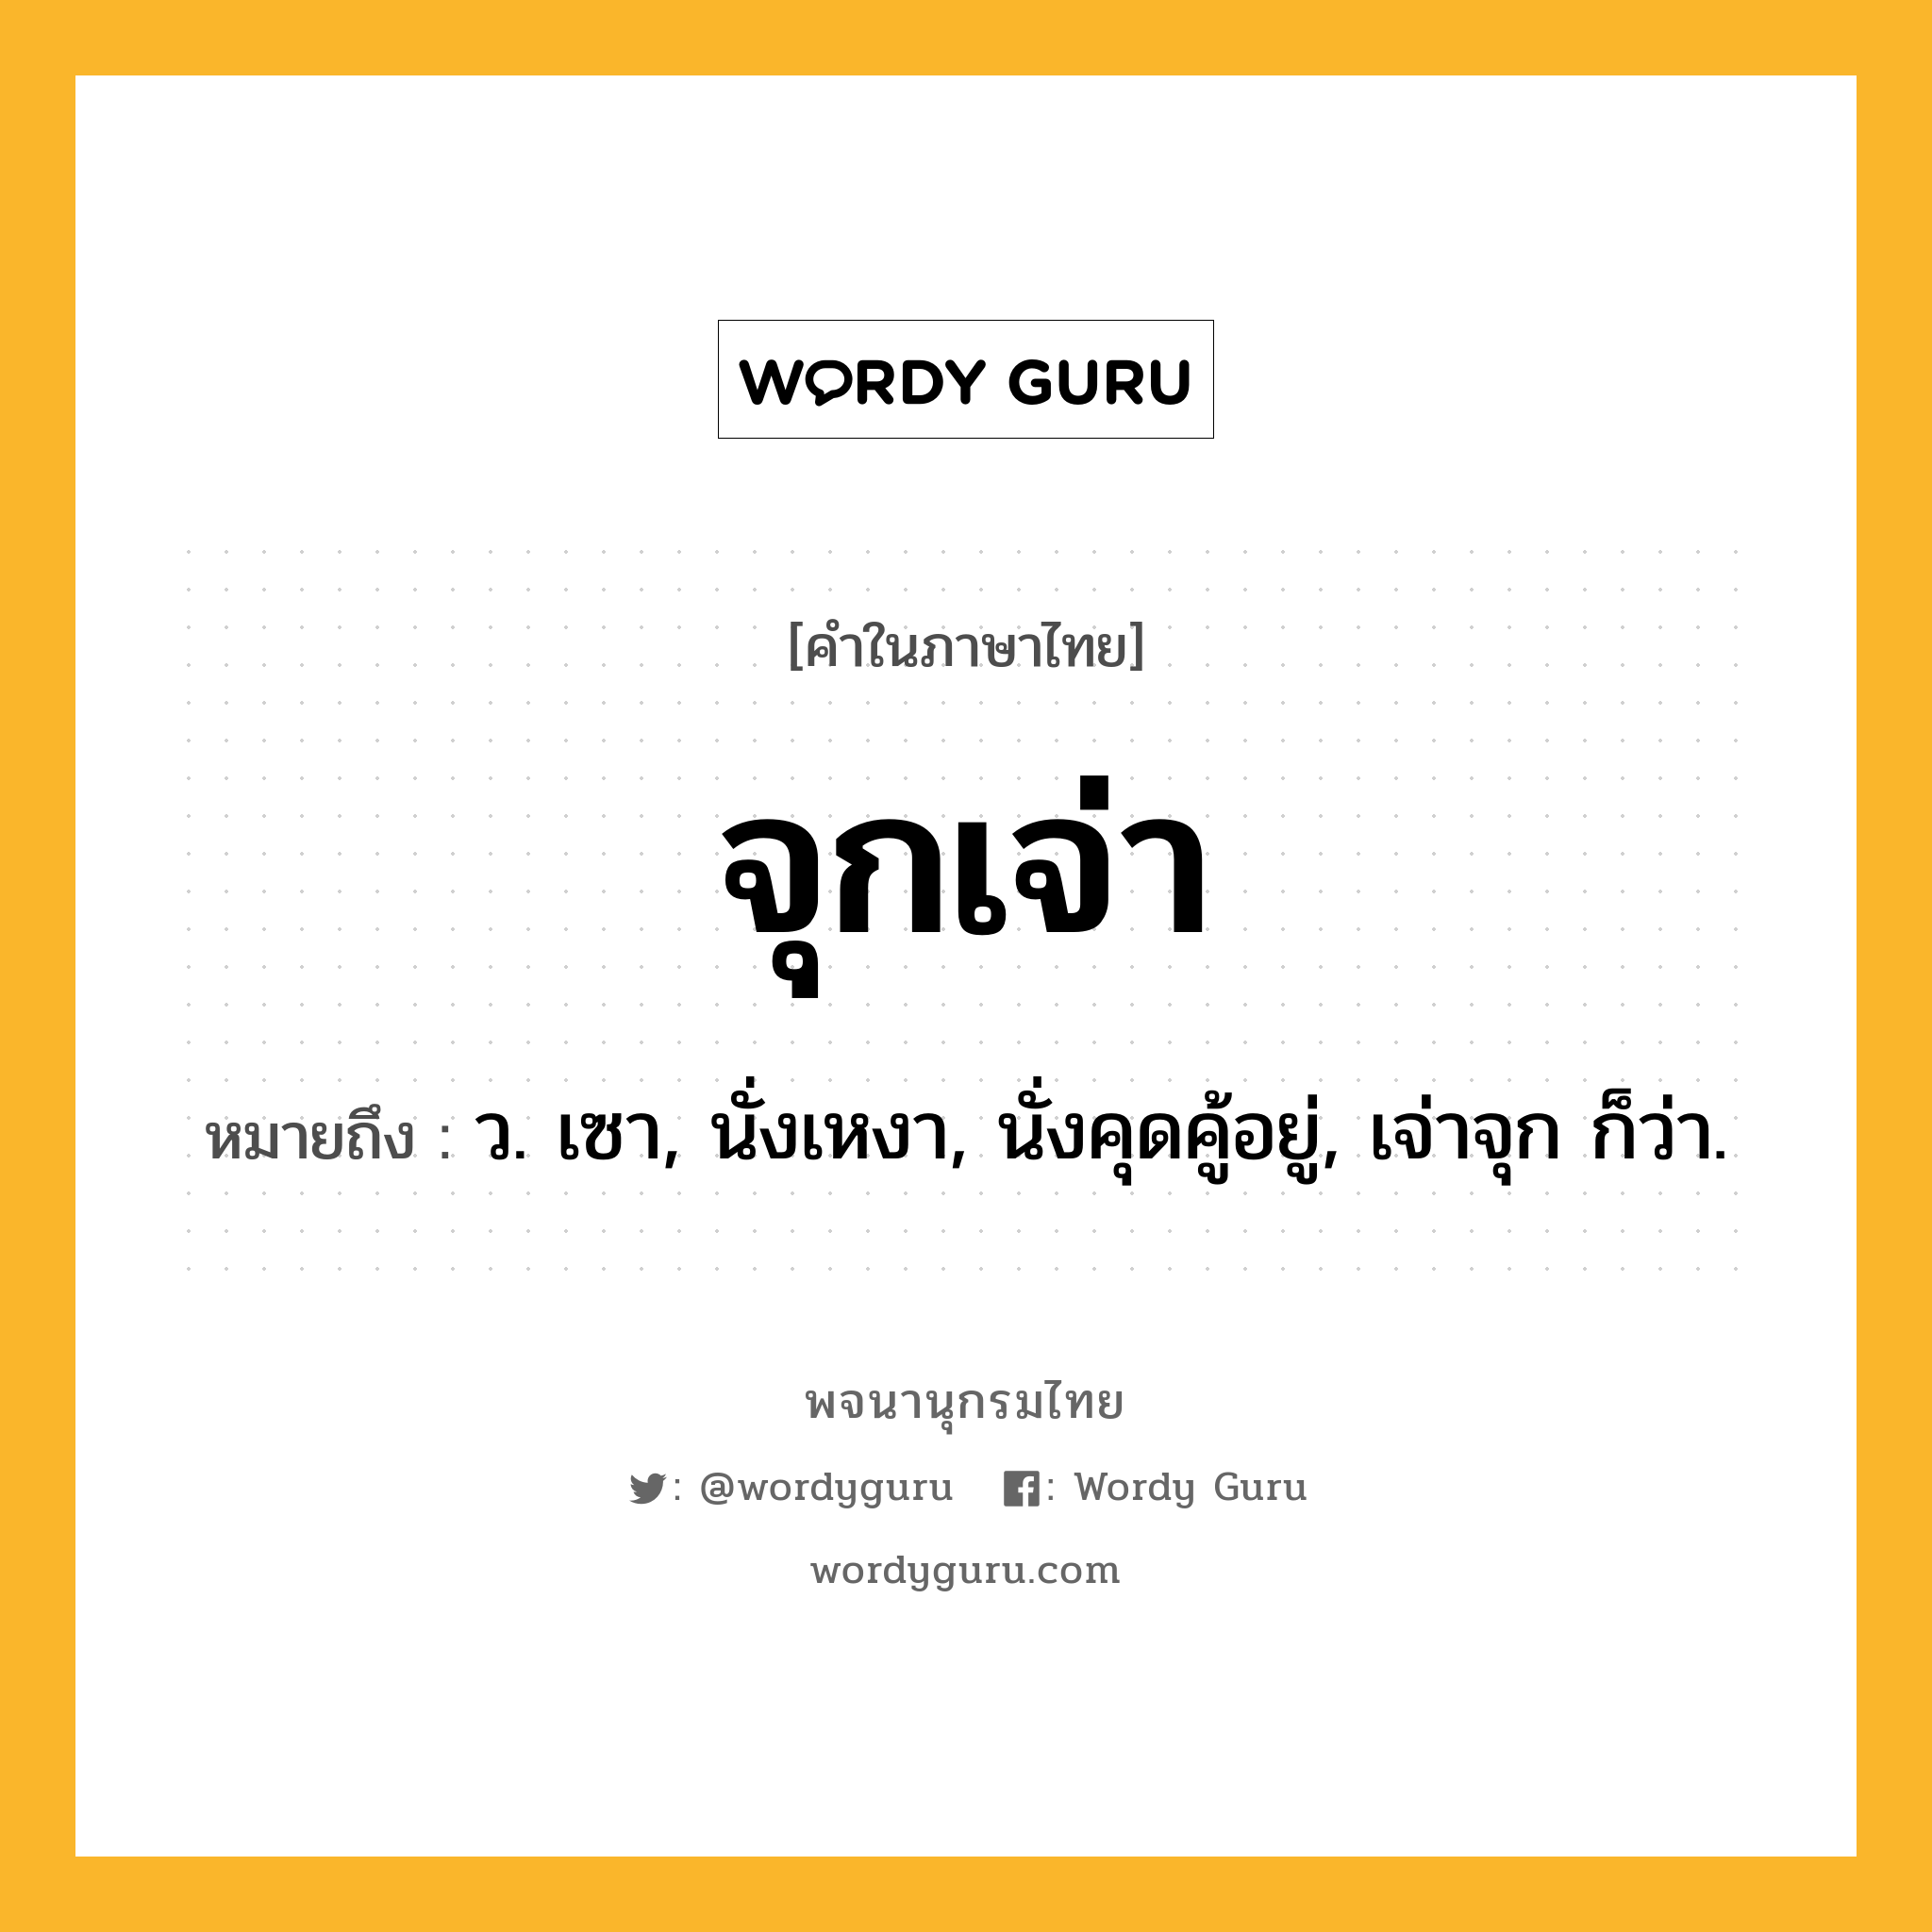 จุกเจ่า ความหมาย หมายถึงอะไร?, คำในภาษาไทย จุกเจ่า หมายถึง ว. เซา, นั่งเหงา, นั่งคุดคู้อยู่, เจ่าจุก ก็ว่า.